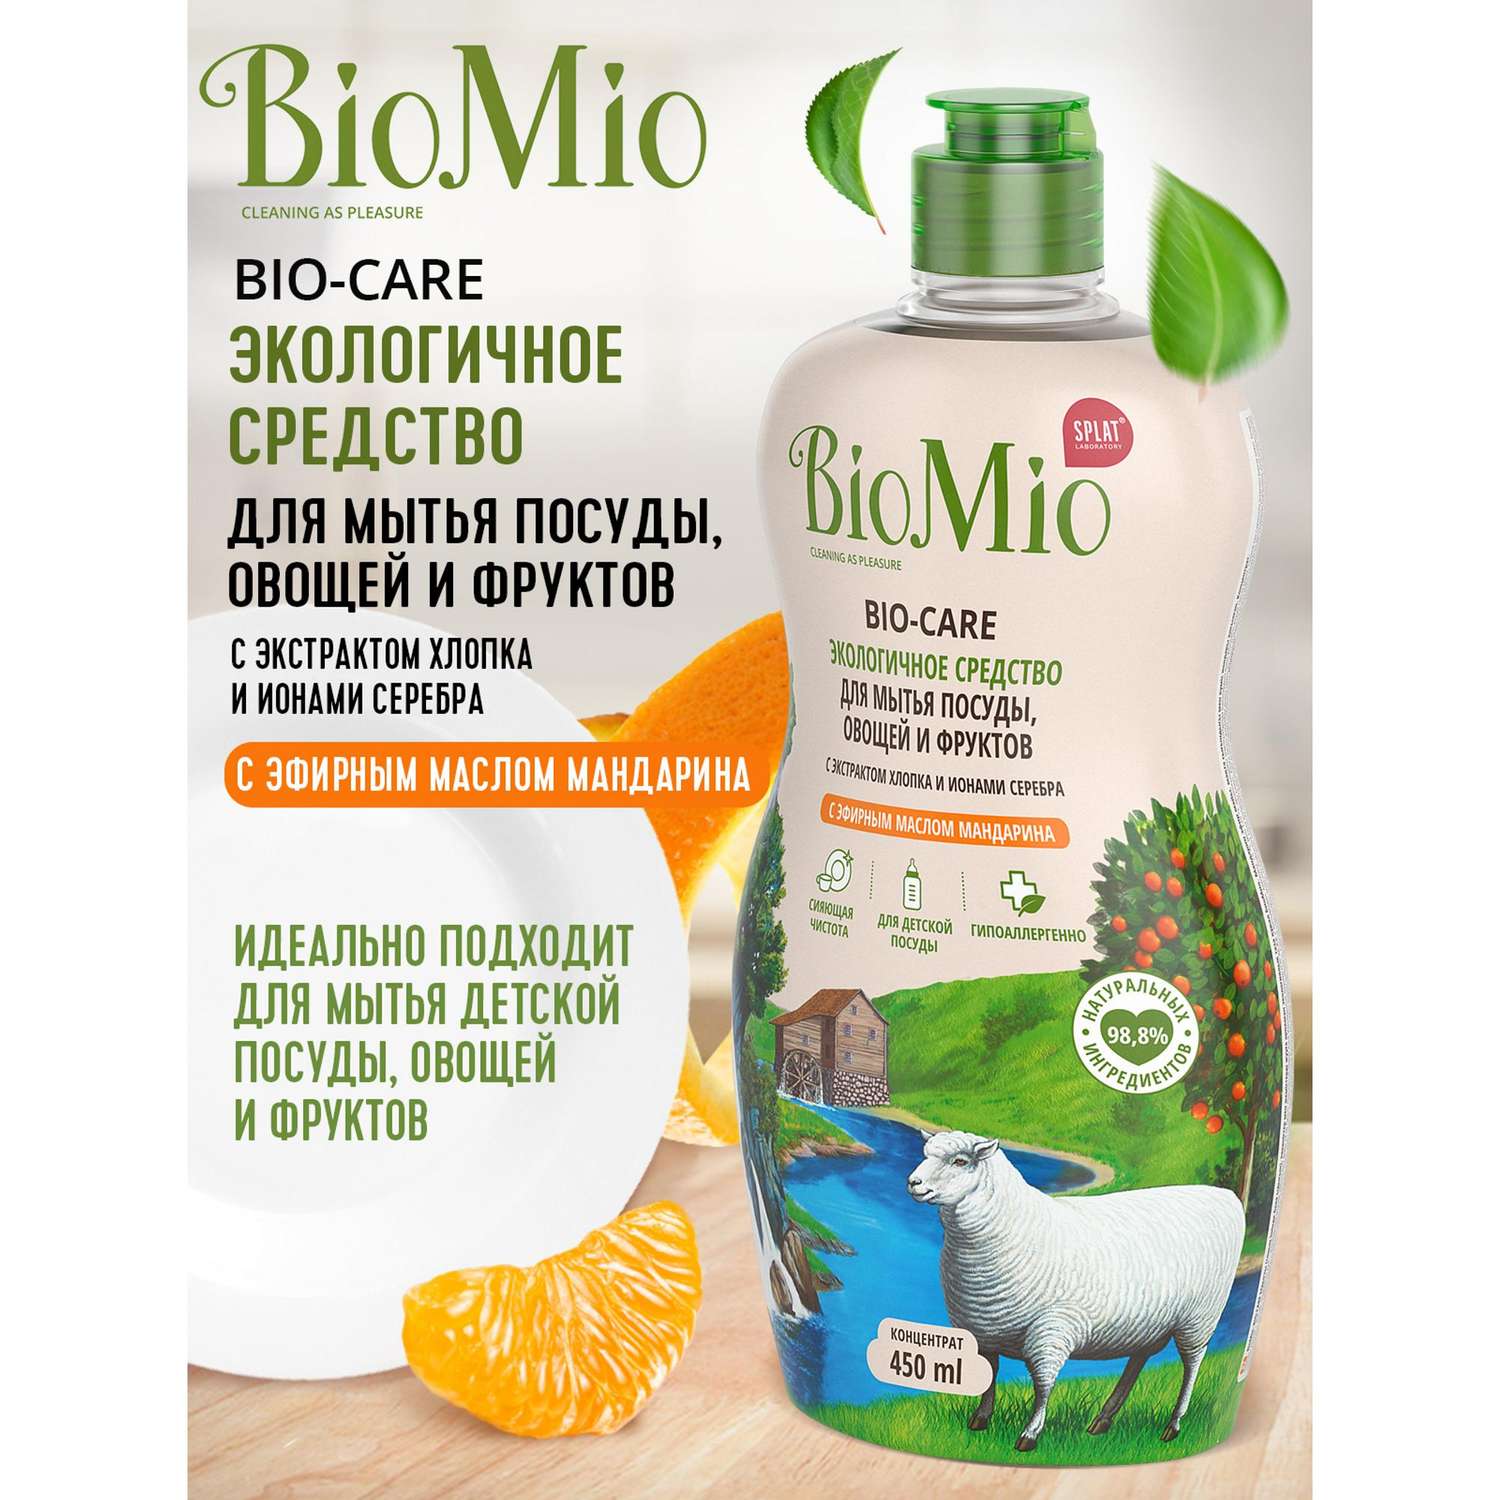 Экологичное средство для мытья посуды, овощей и фруктов BioMio BIO-CARE (с эфирным маслом мандарина и экстрактом хлопка) 450 мл - фото 2